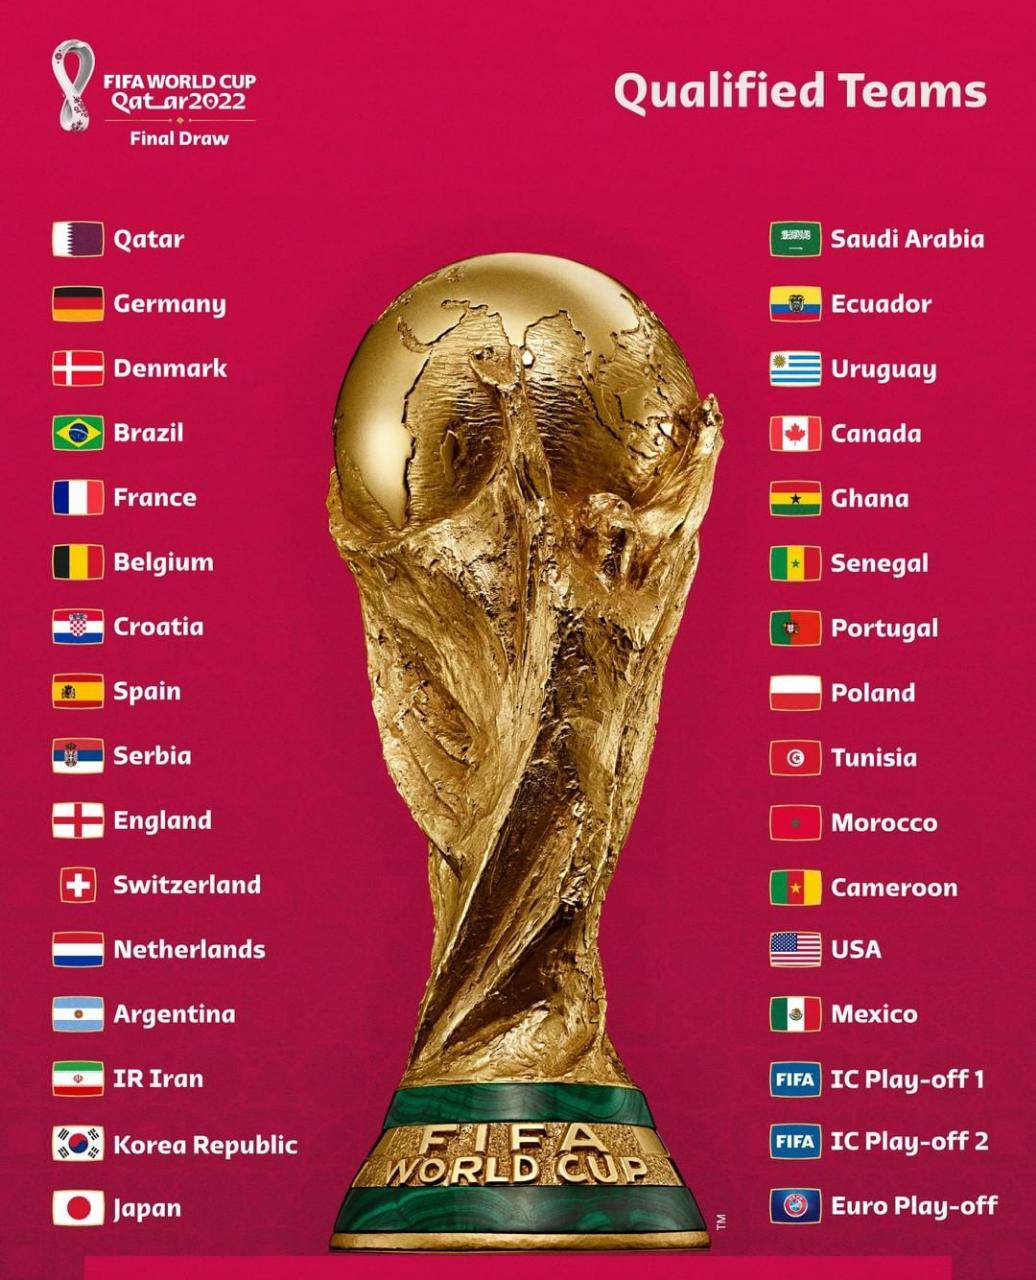 Copa do Mundo do Catar começa neste domingo - AcheiUSA